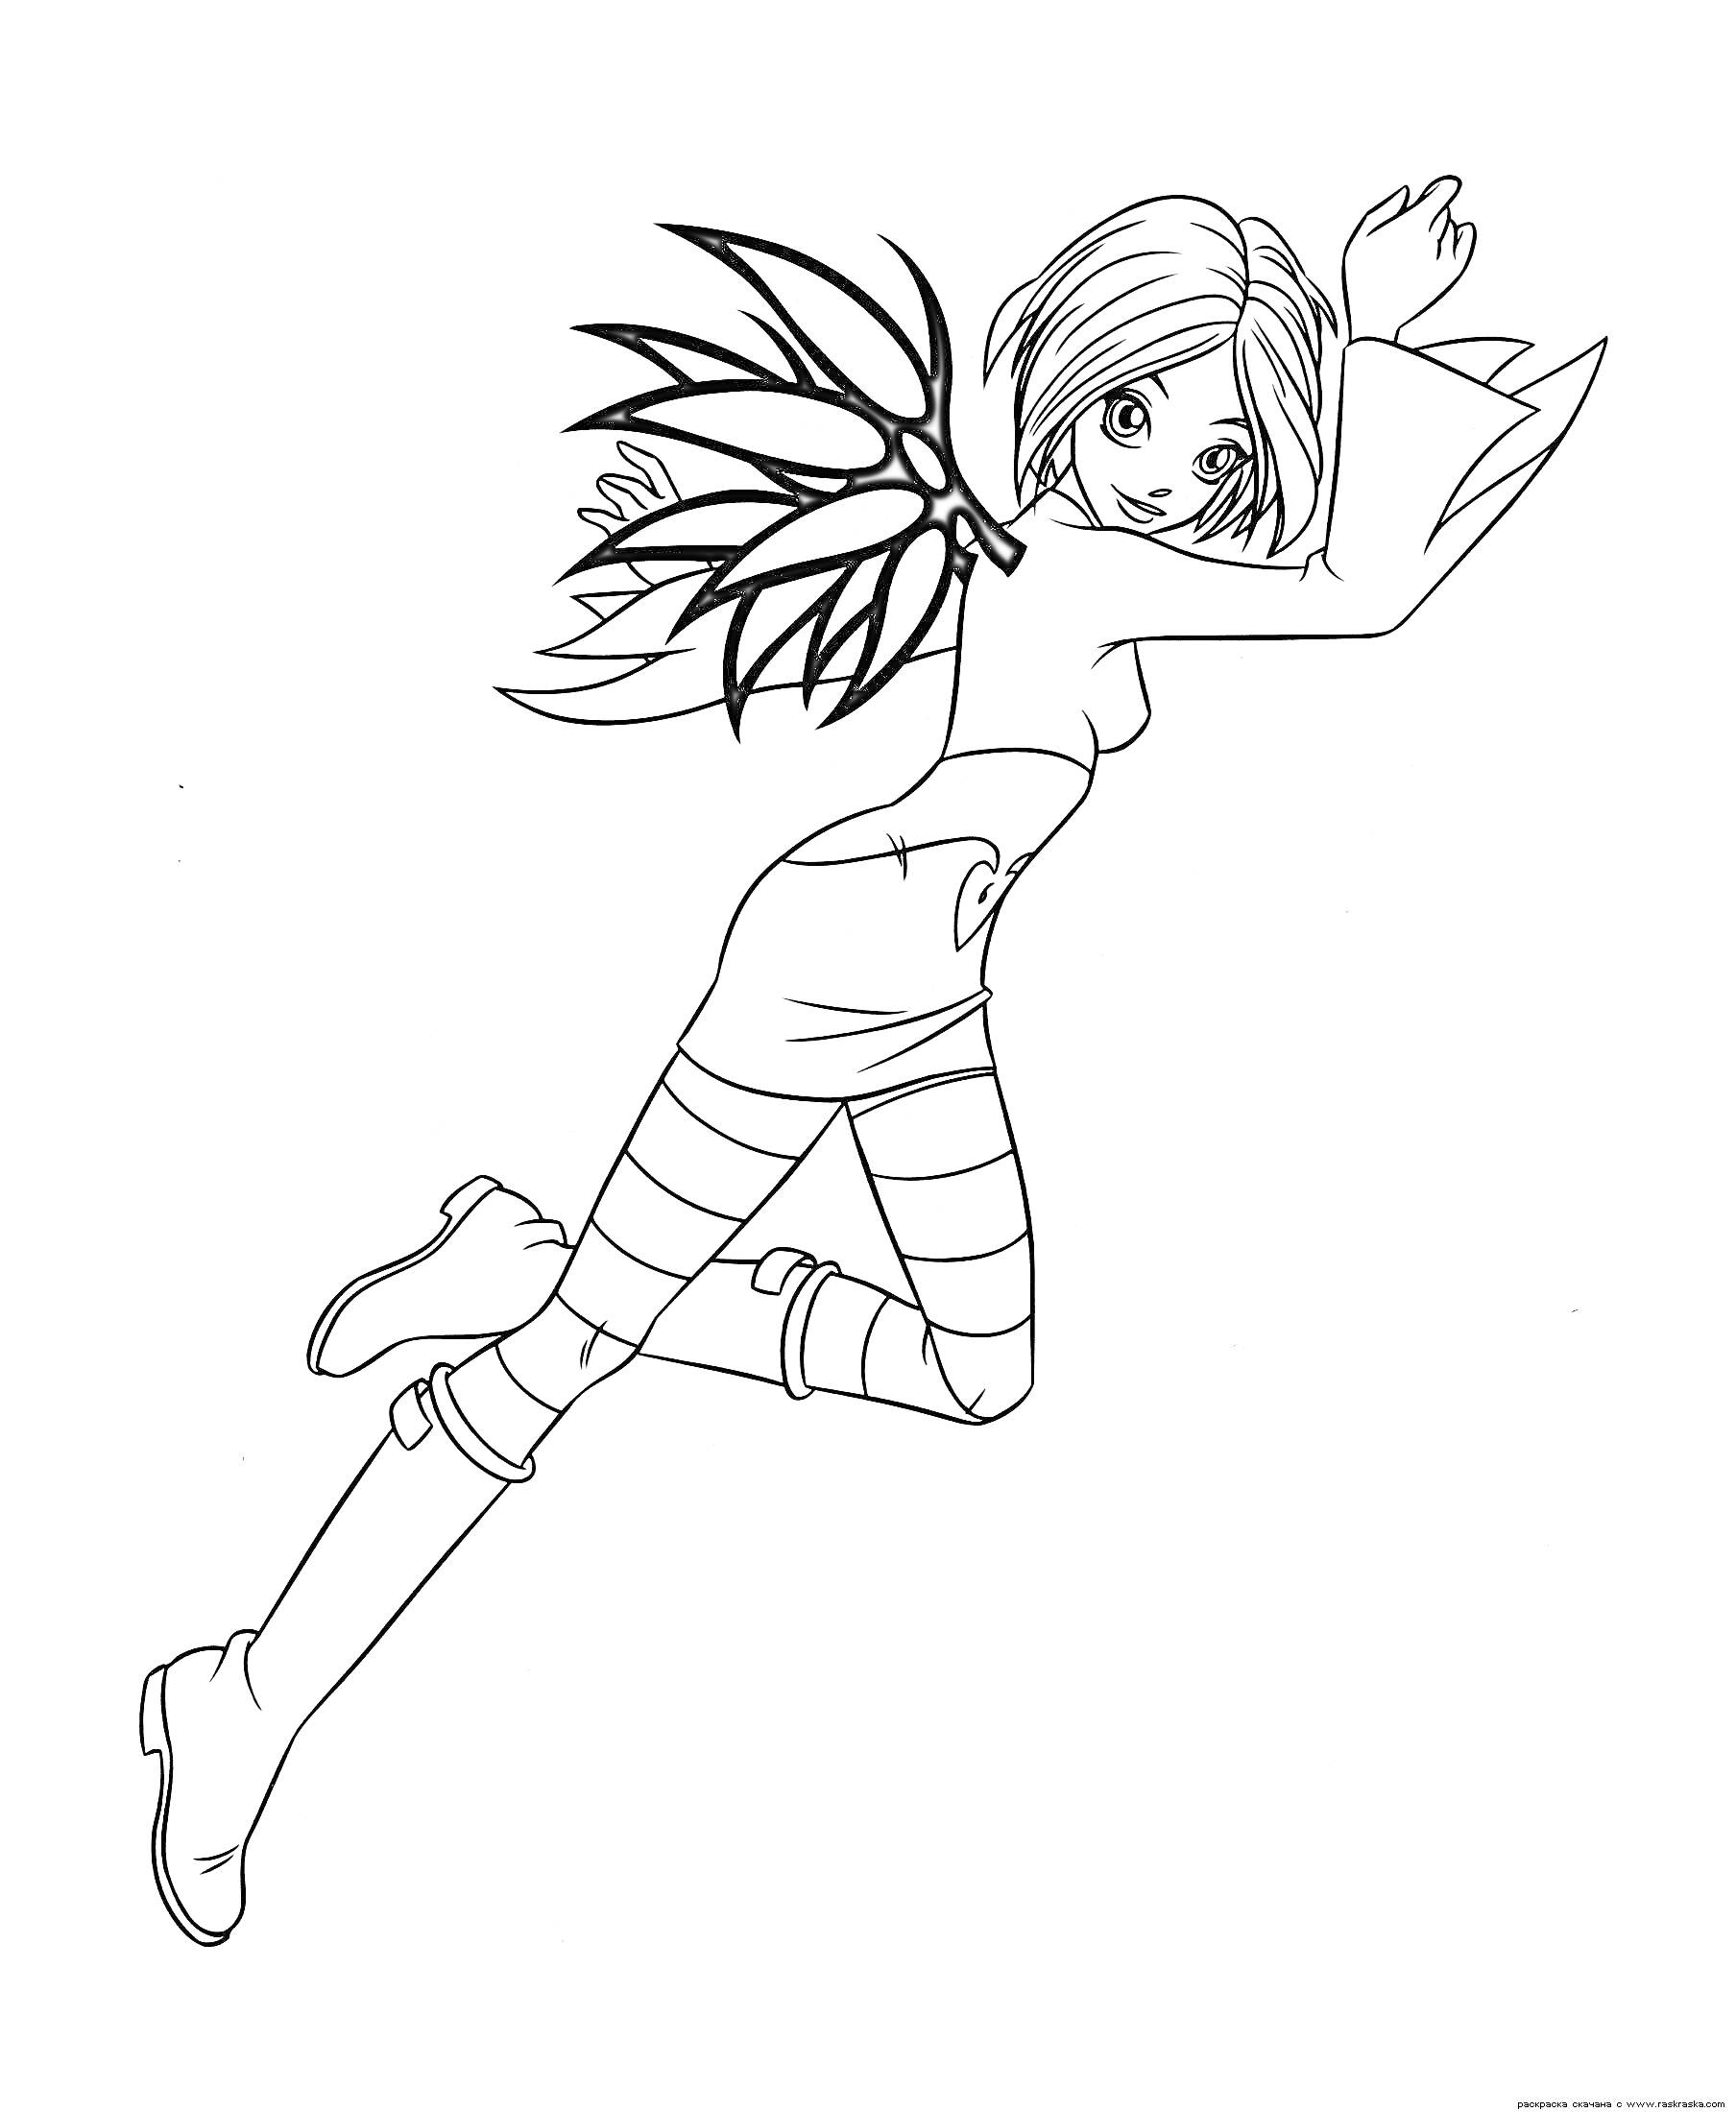 Девушка-чародейка с крыльями, волосы средней длины, одета в сапоги и юбку с поясом, на руках длинные перчатки